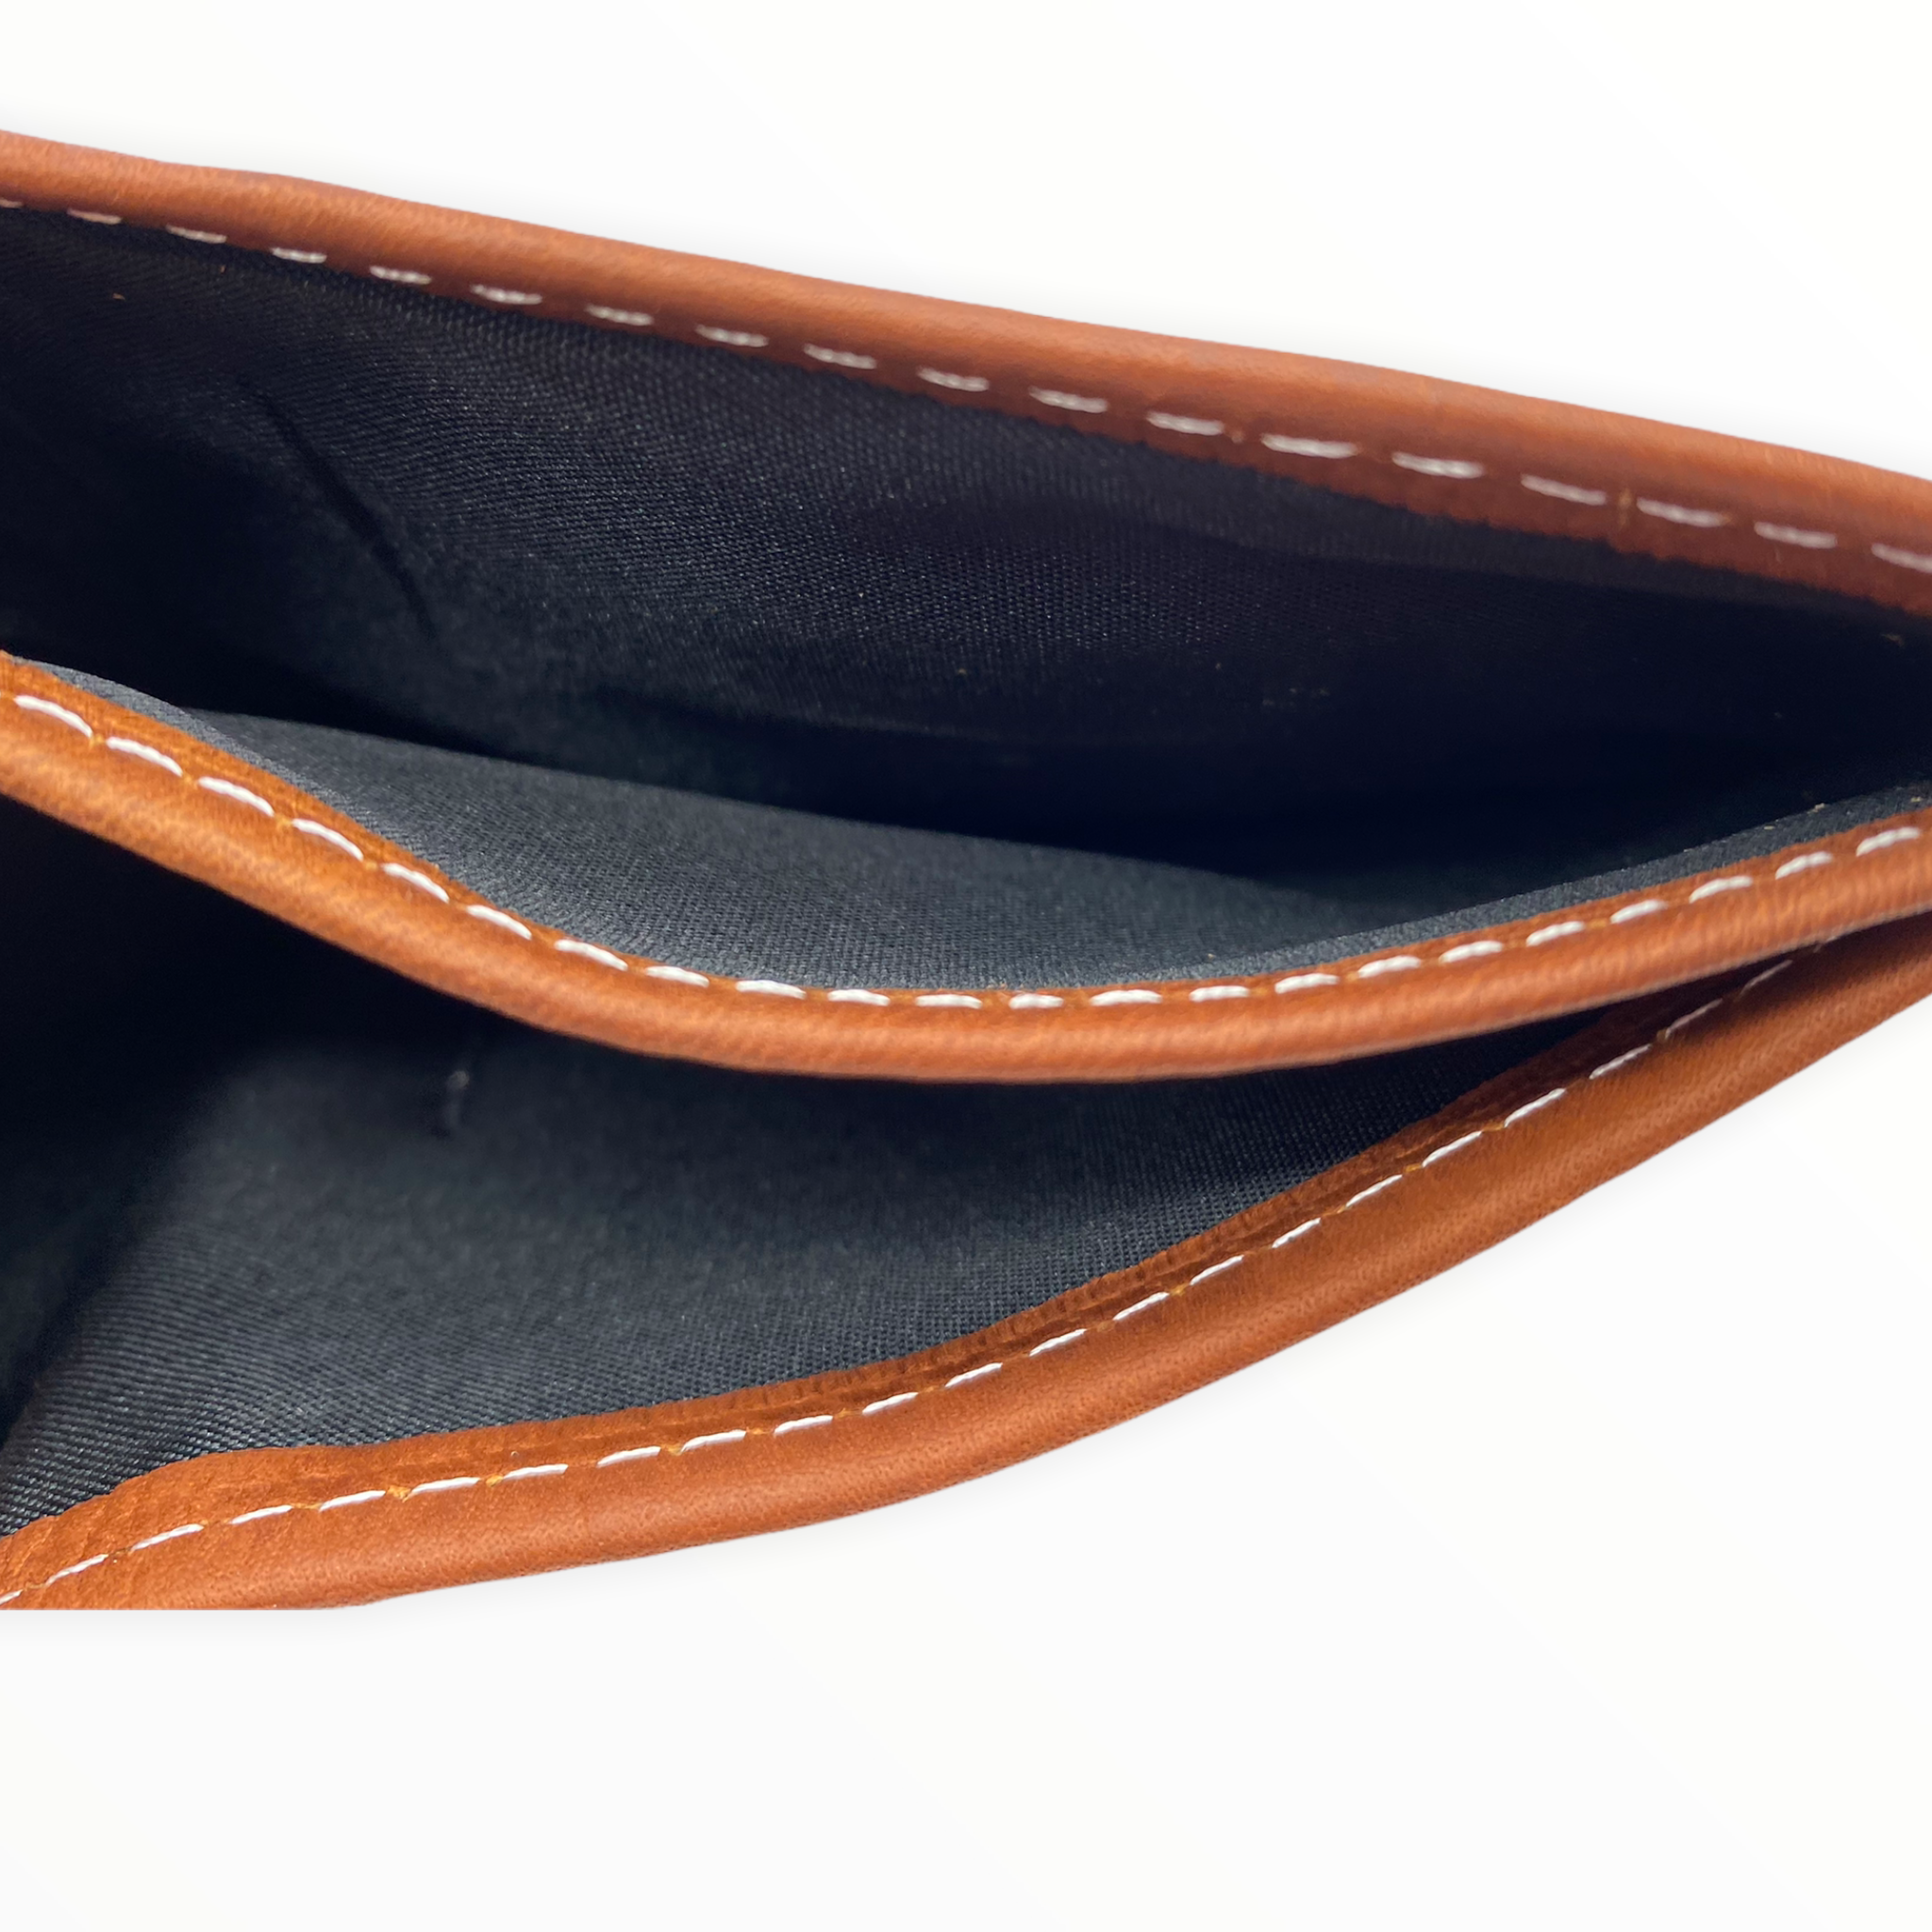 Men's Black Genuine Leather Wallet Made in Mexico Cartera de